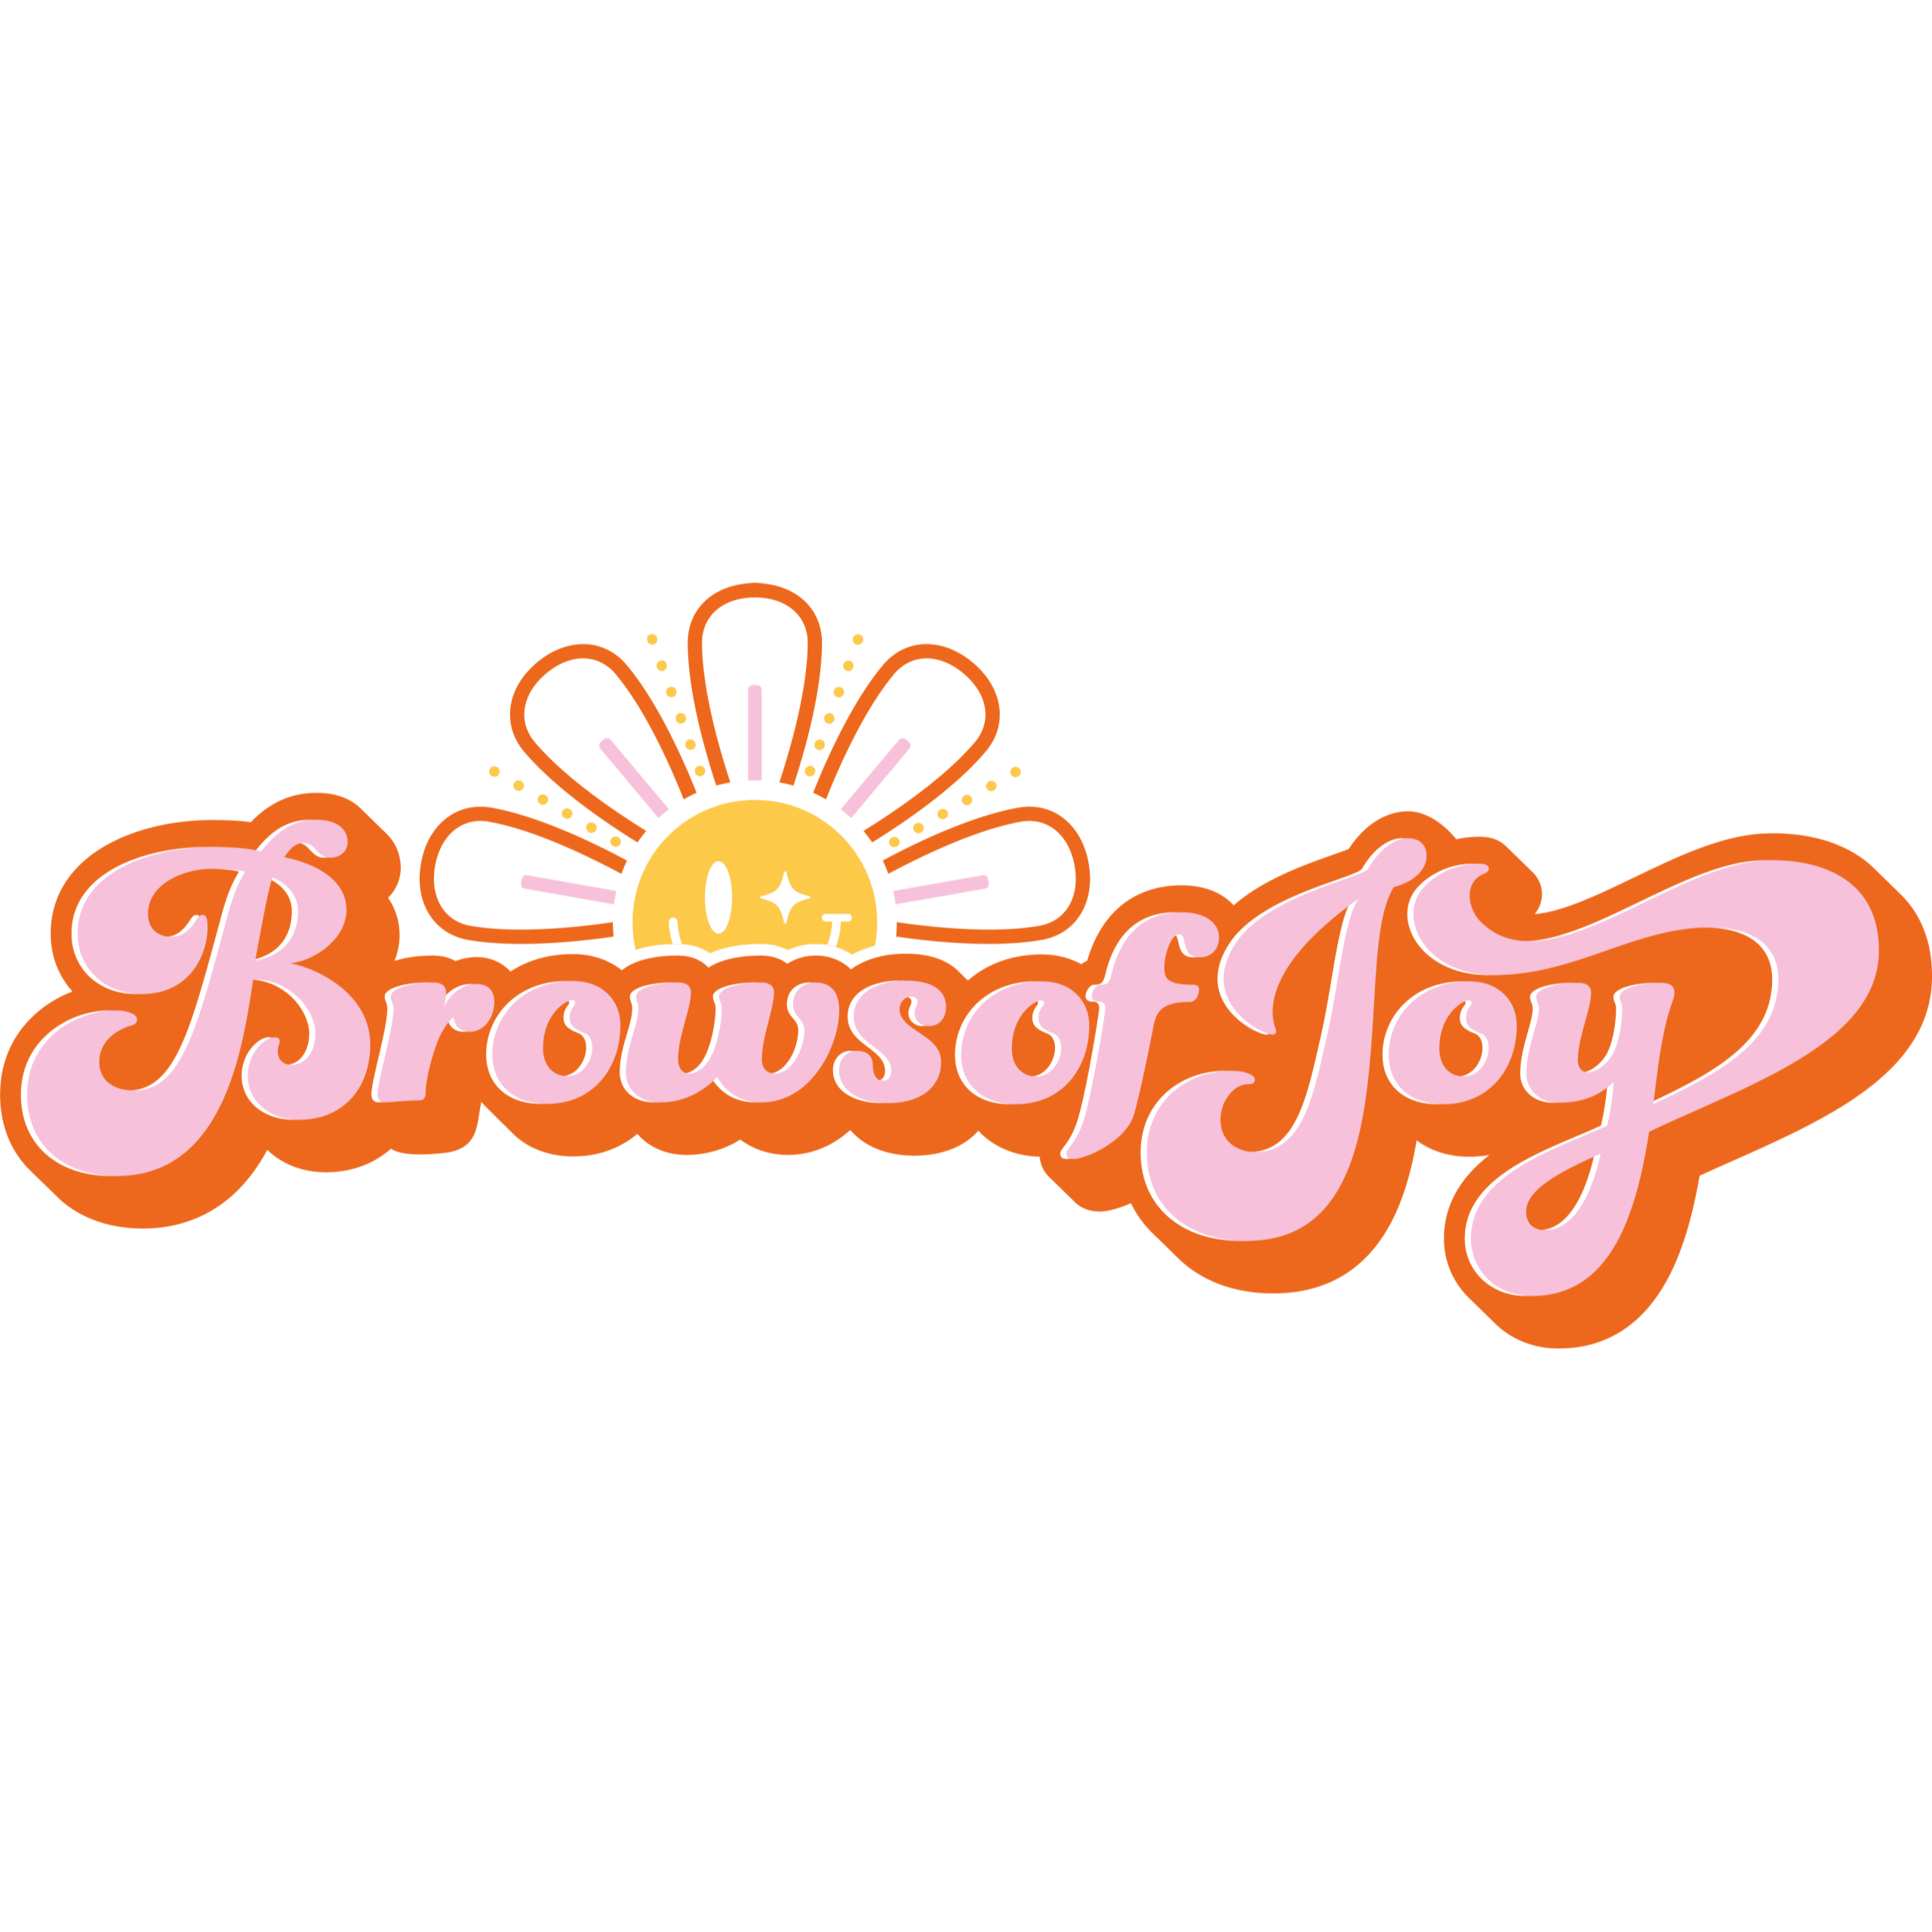 Brows of Joy